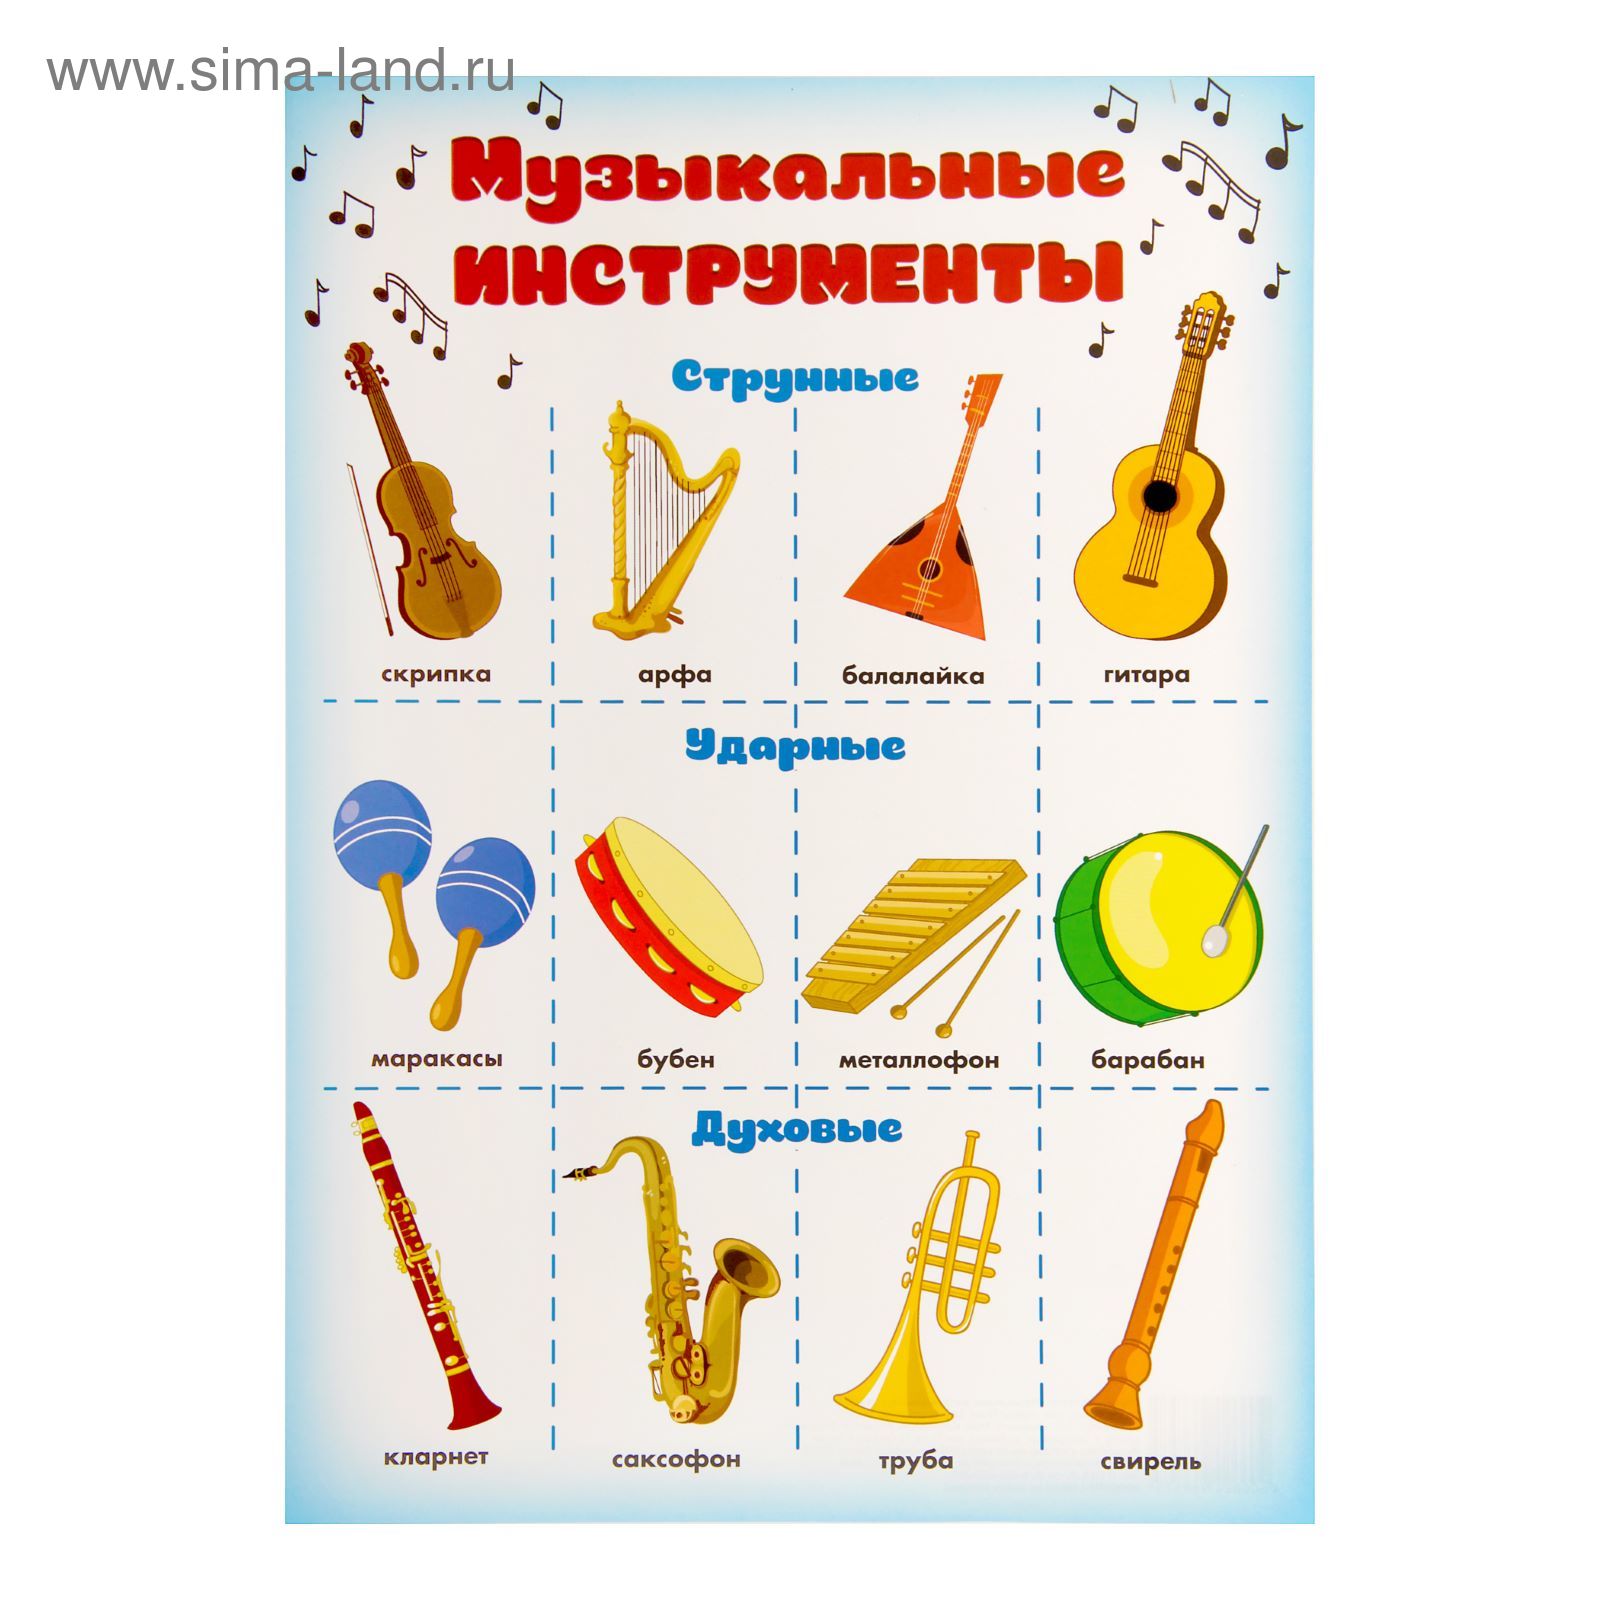 Музыкальные инструменты. Плакат музыкальные инструменты. Музыкальные инструменты для дошкольников. Детские музыкальные инструменты с названиями.